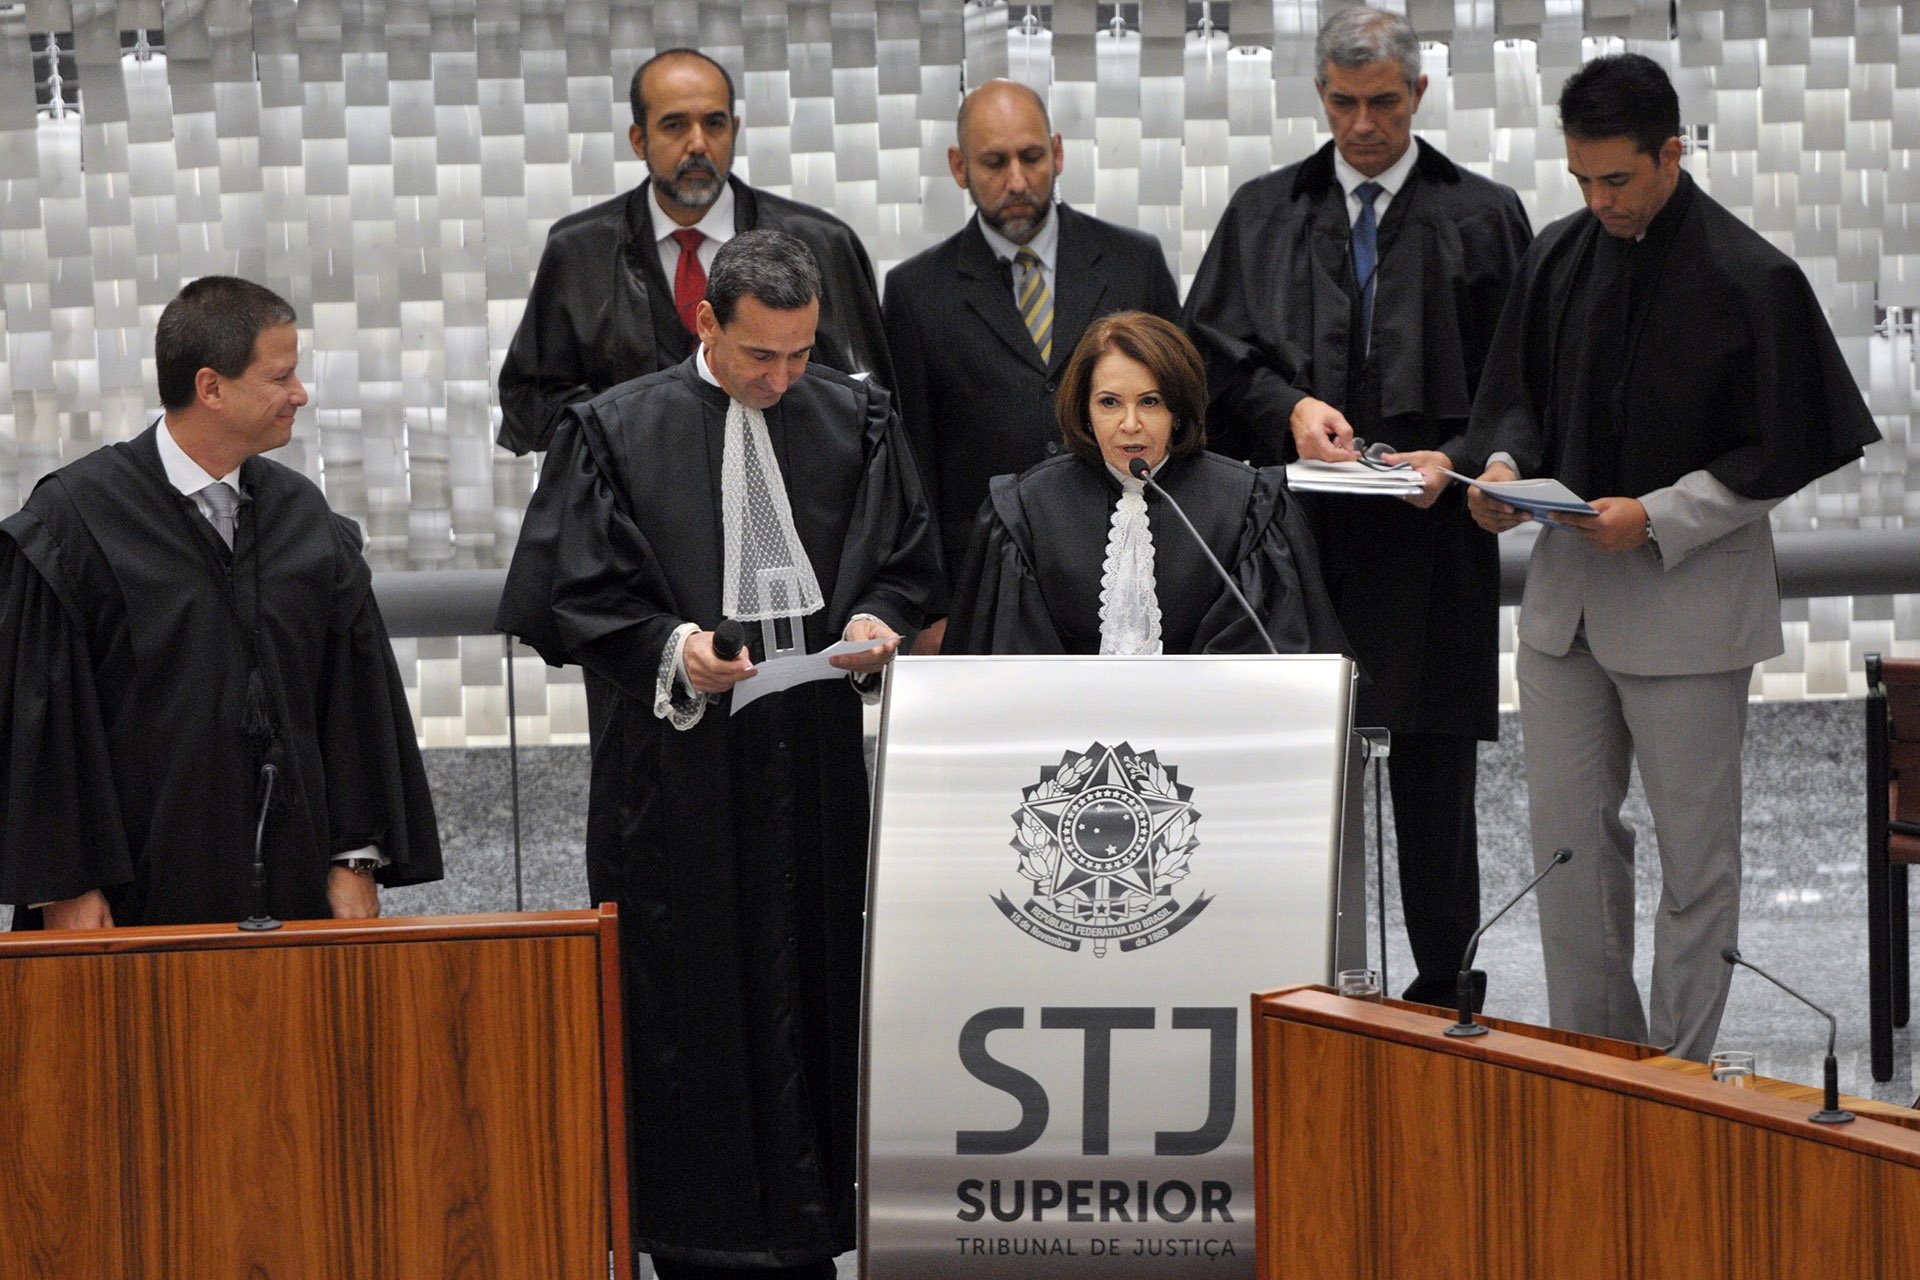 Os cargos de presidência e de vice-presidência do Superior Tribunal de Justiça (STJ) foram passados nesta quinta-feira (1º) em cerimônia na sala do plenário do tribunal. A ministra Laurita Vaz assumiu como presidente